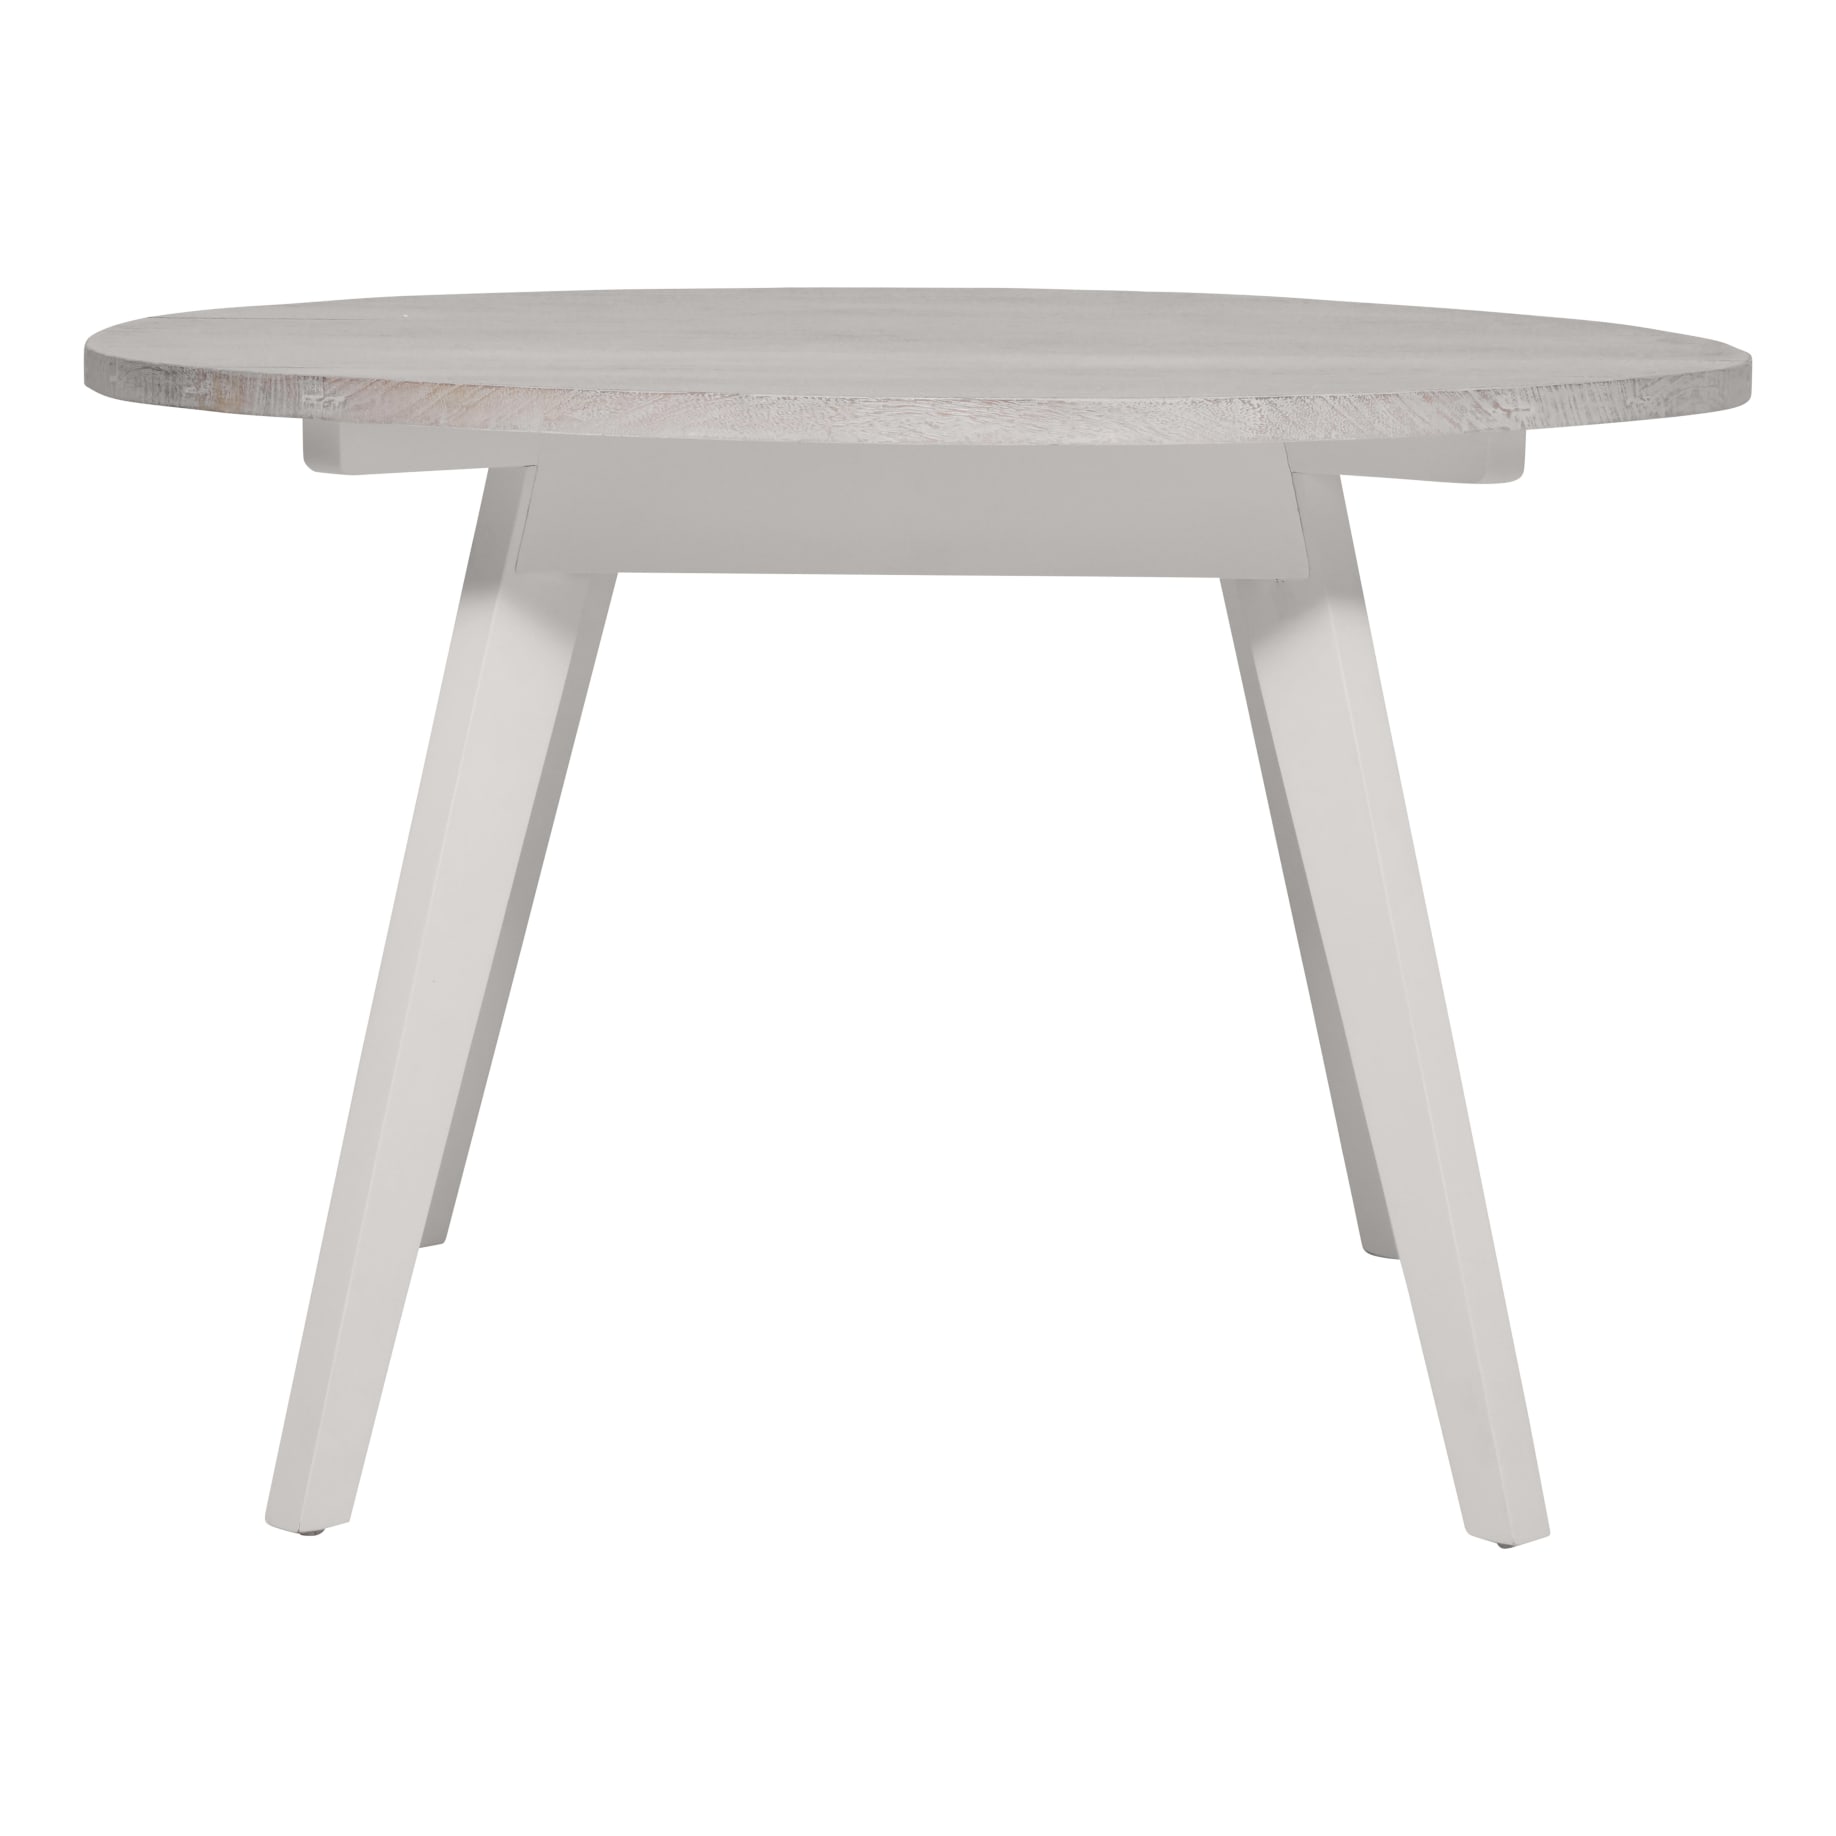 Porto Round Dining Table 120cm in Whitewash/White